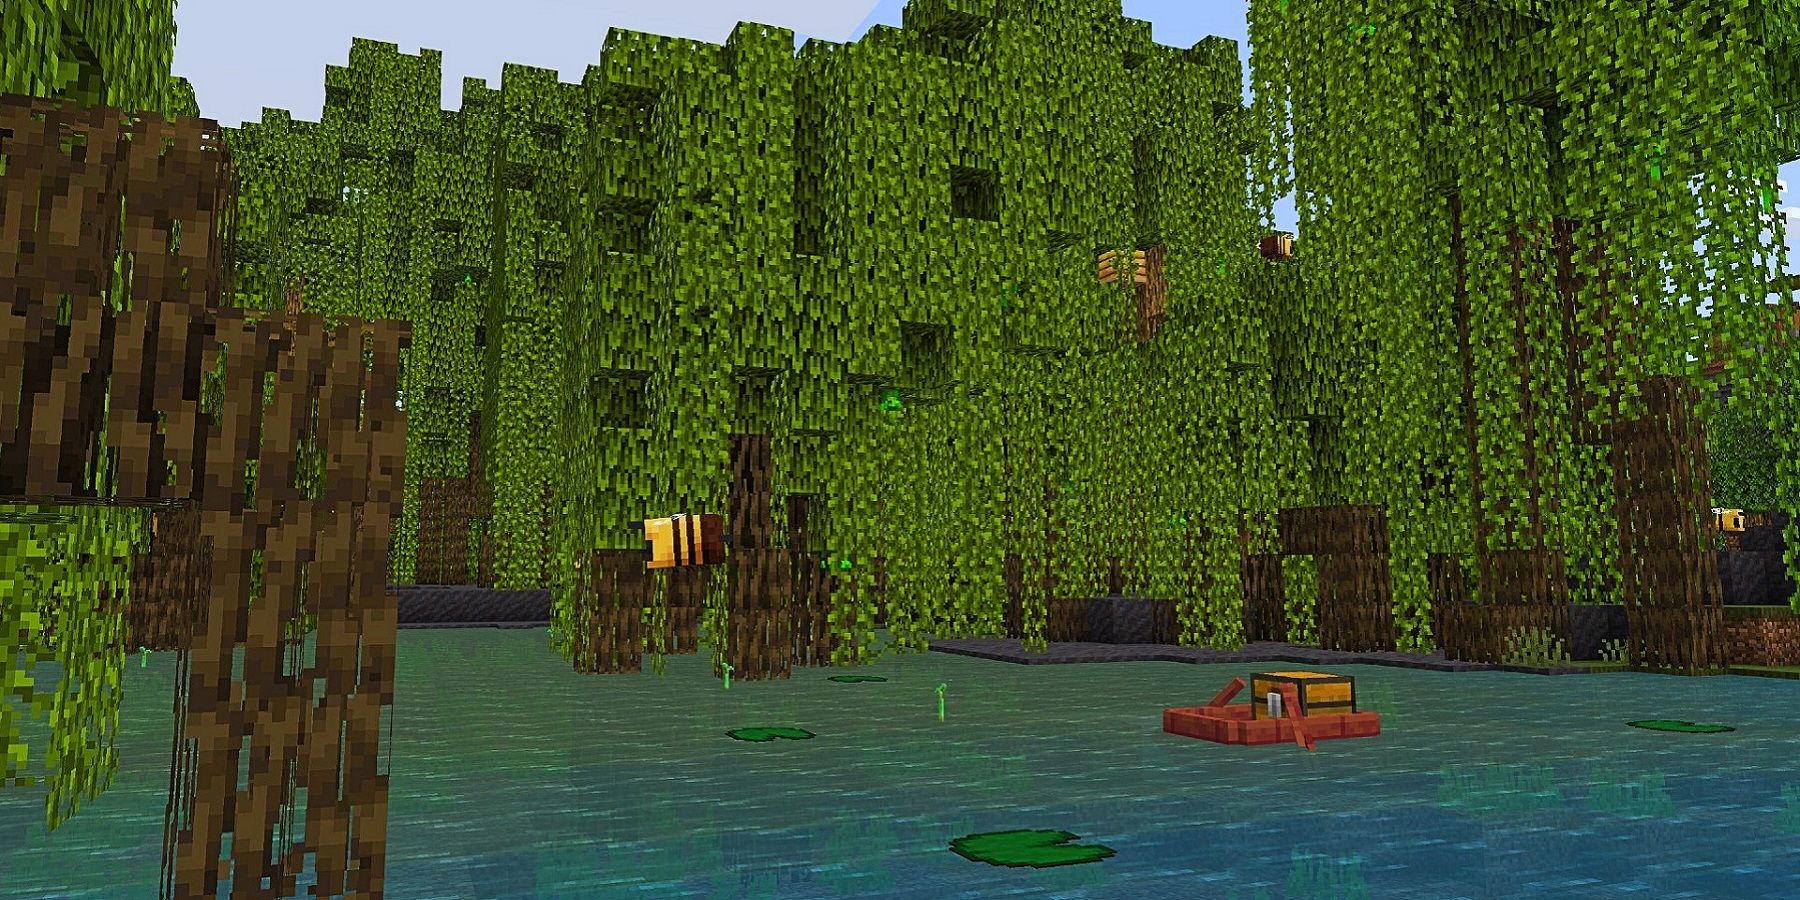 Изображение из Minecraft, показывающее обмен мангровыми деревьями.